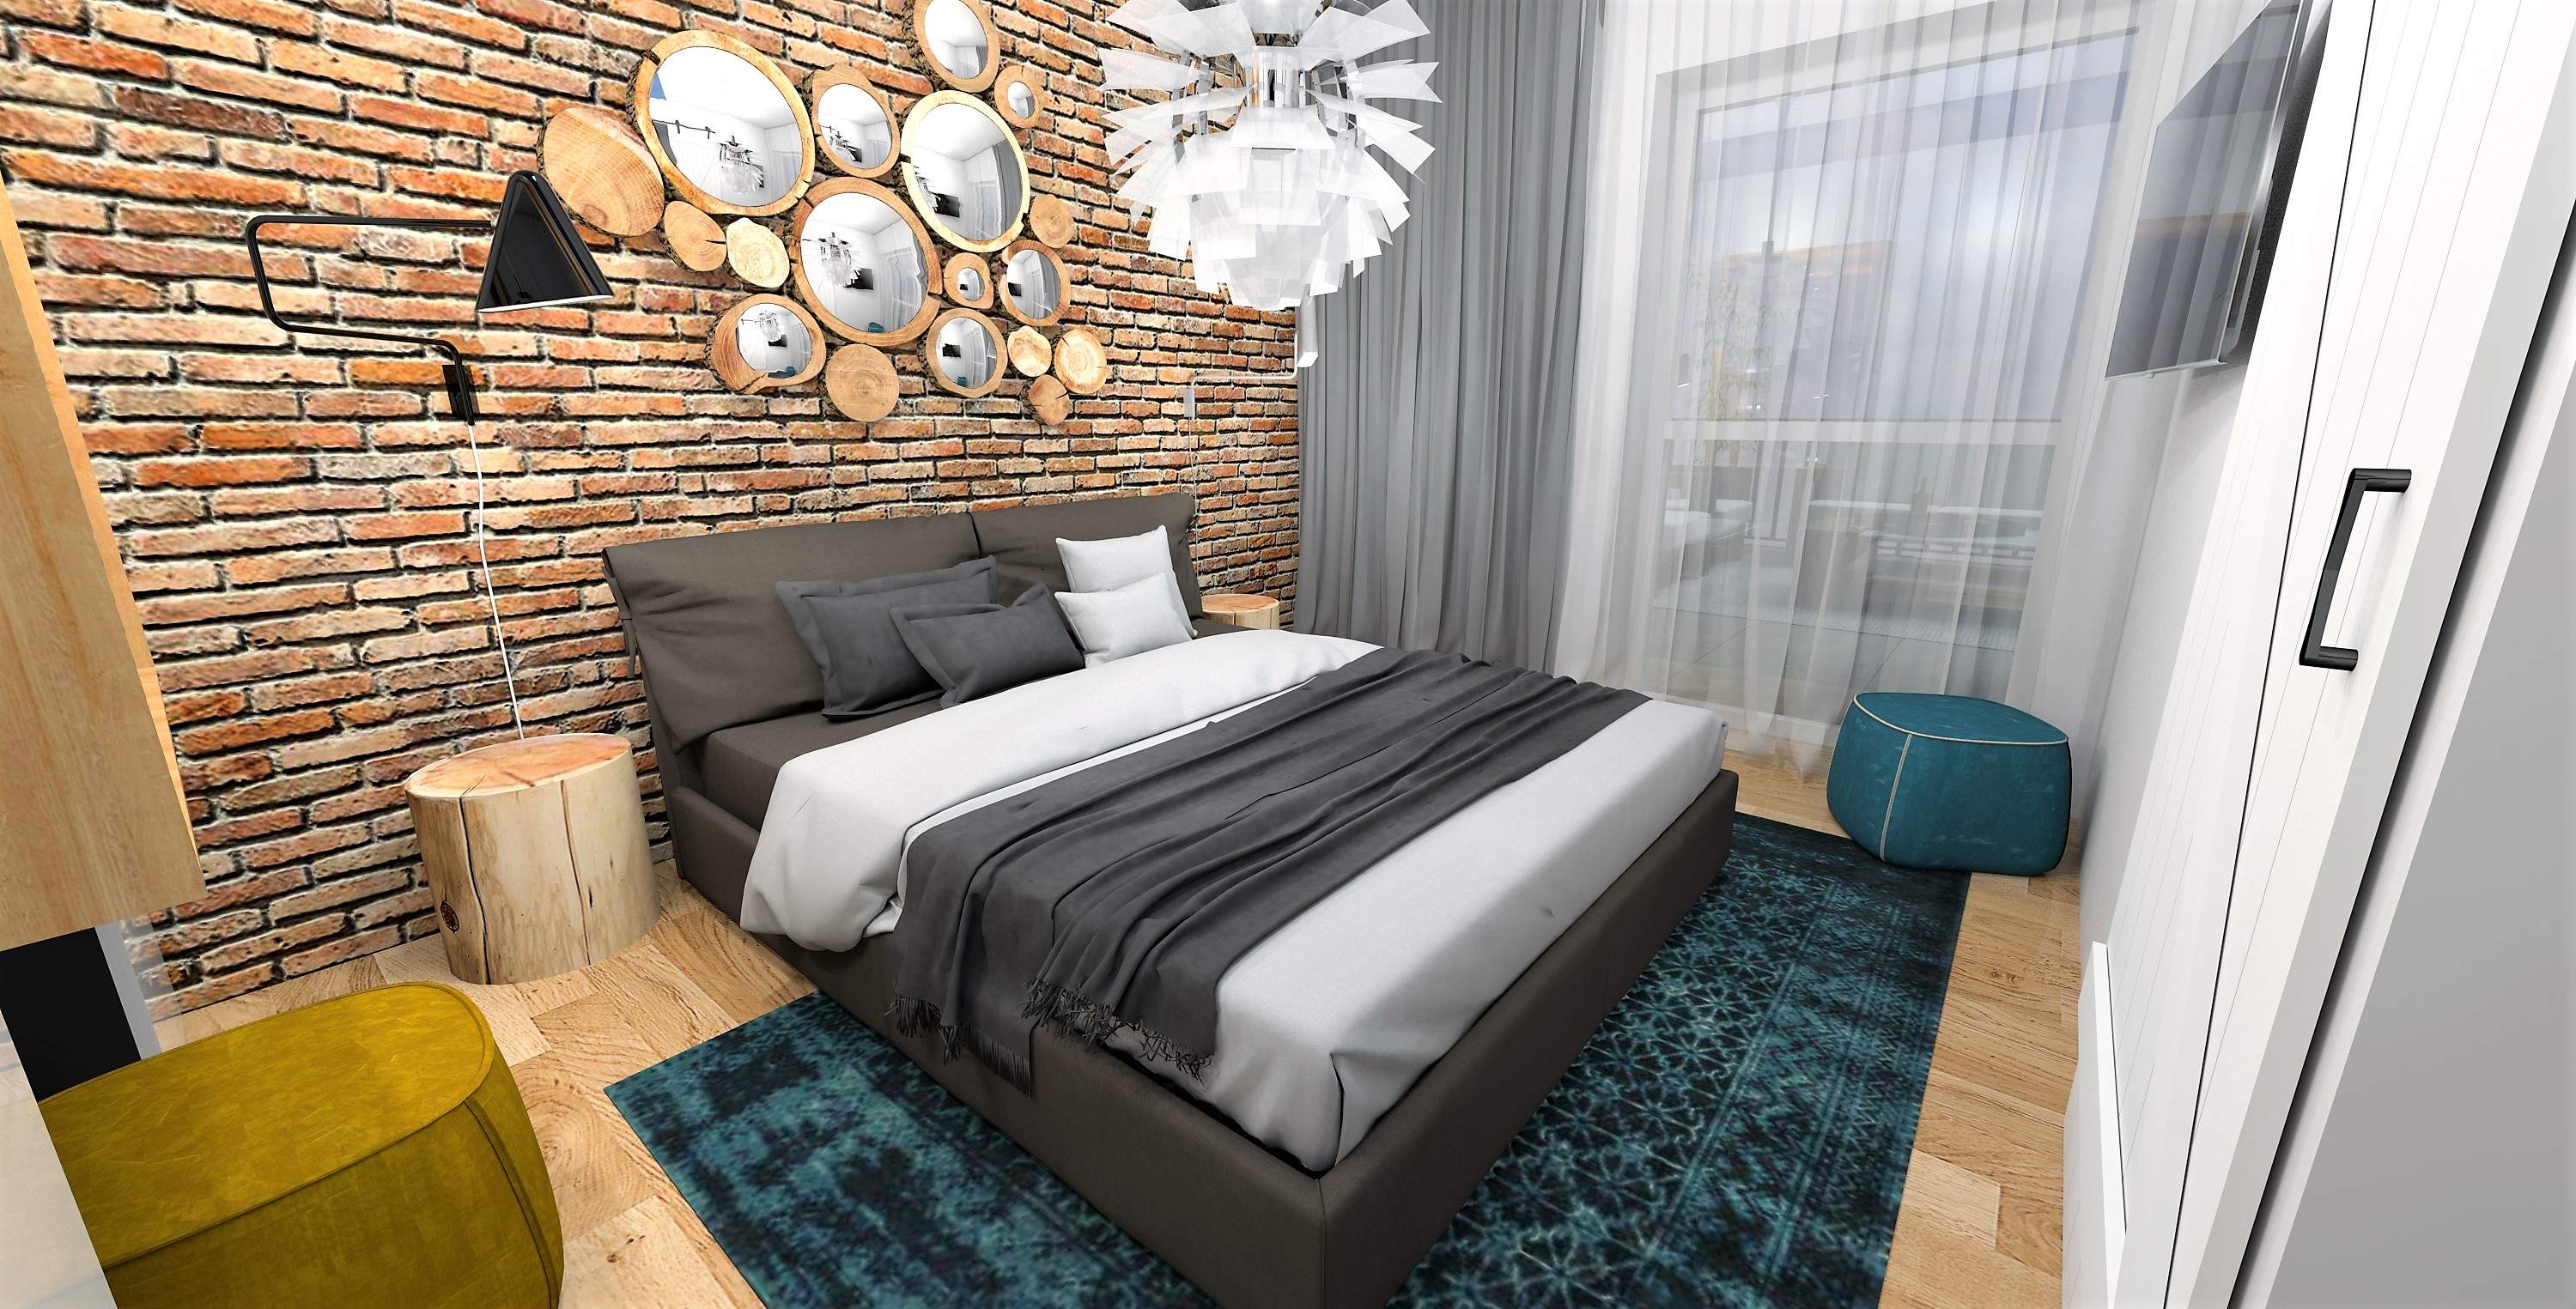 Projekt sypialni w mieszkaniu w Rzeszowie, cegła, naturalne drewno, akcenty kolorystyczne.